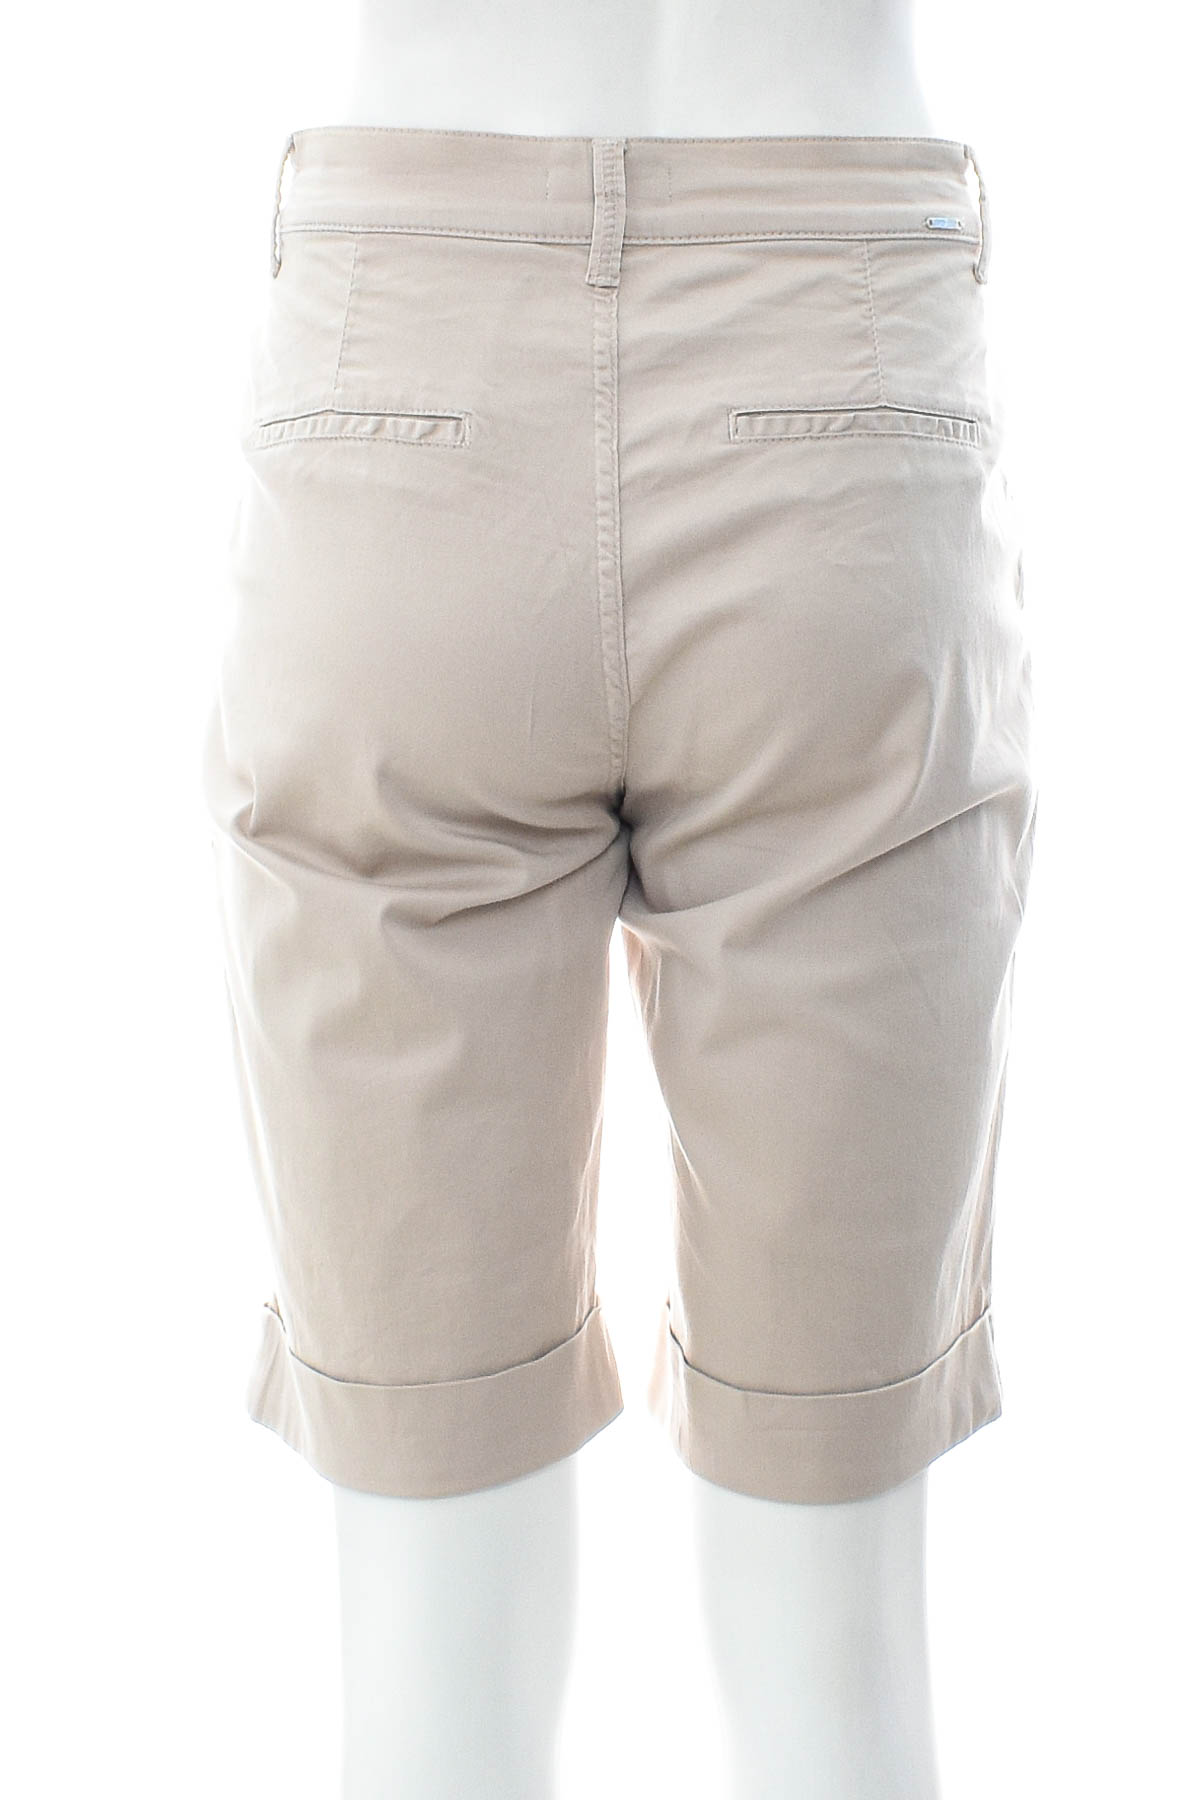 Female shorts - Pierre Cardin - 1